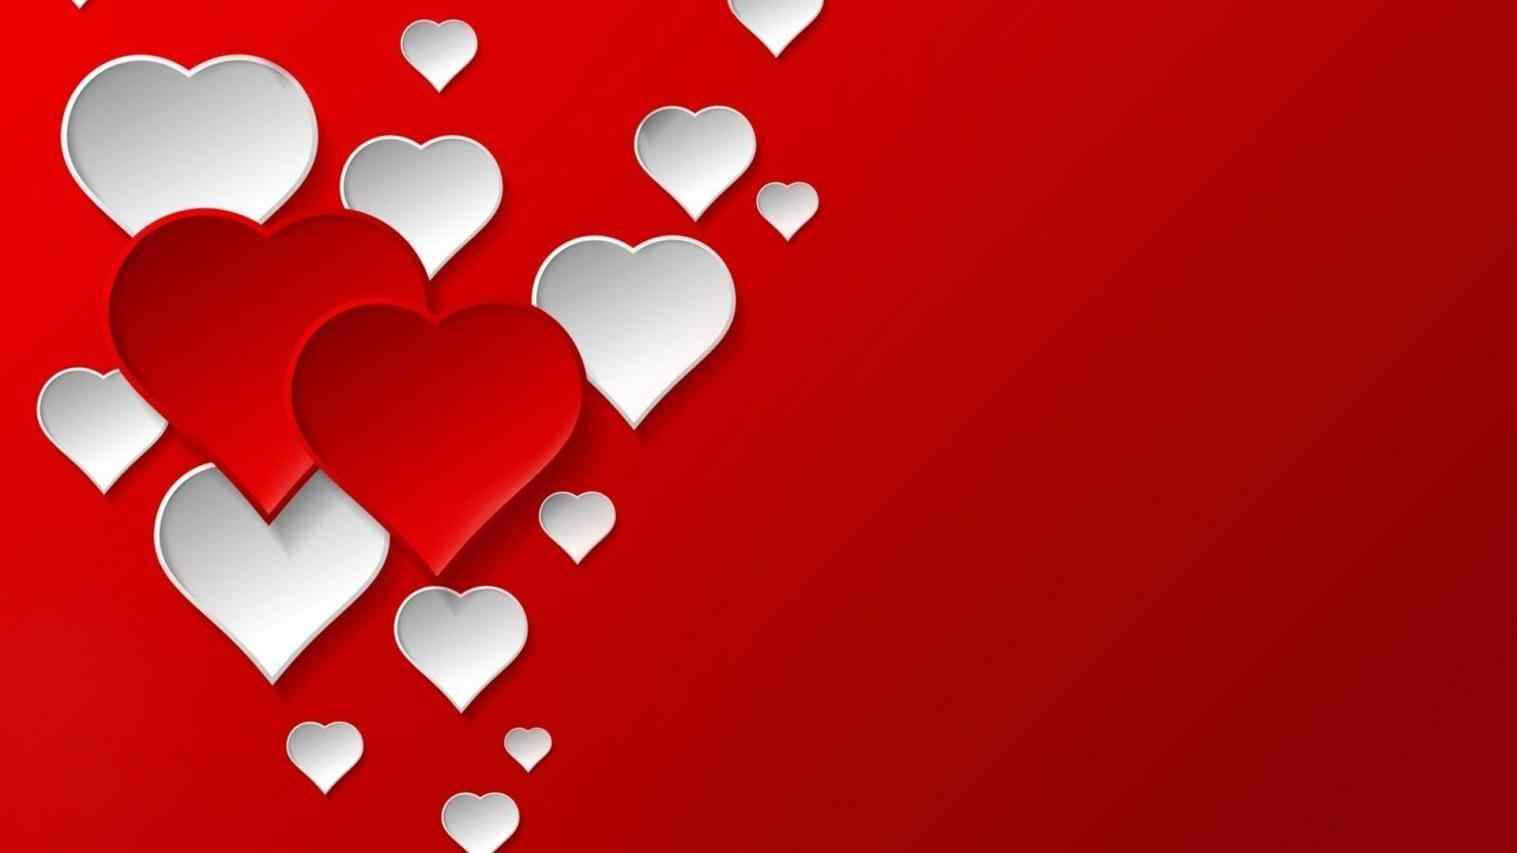 Bakgrundsbildermed Vita Och Röda Hjärtan Till Alla Hjärtans Dag På Datorskärmen. Wallpaper